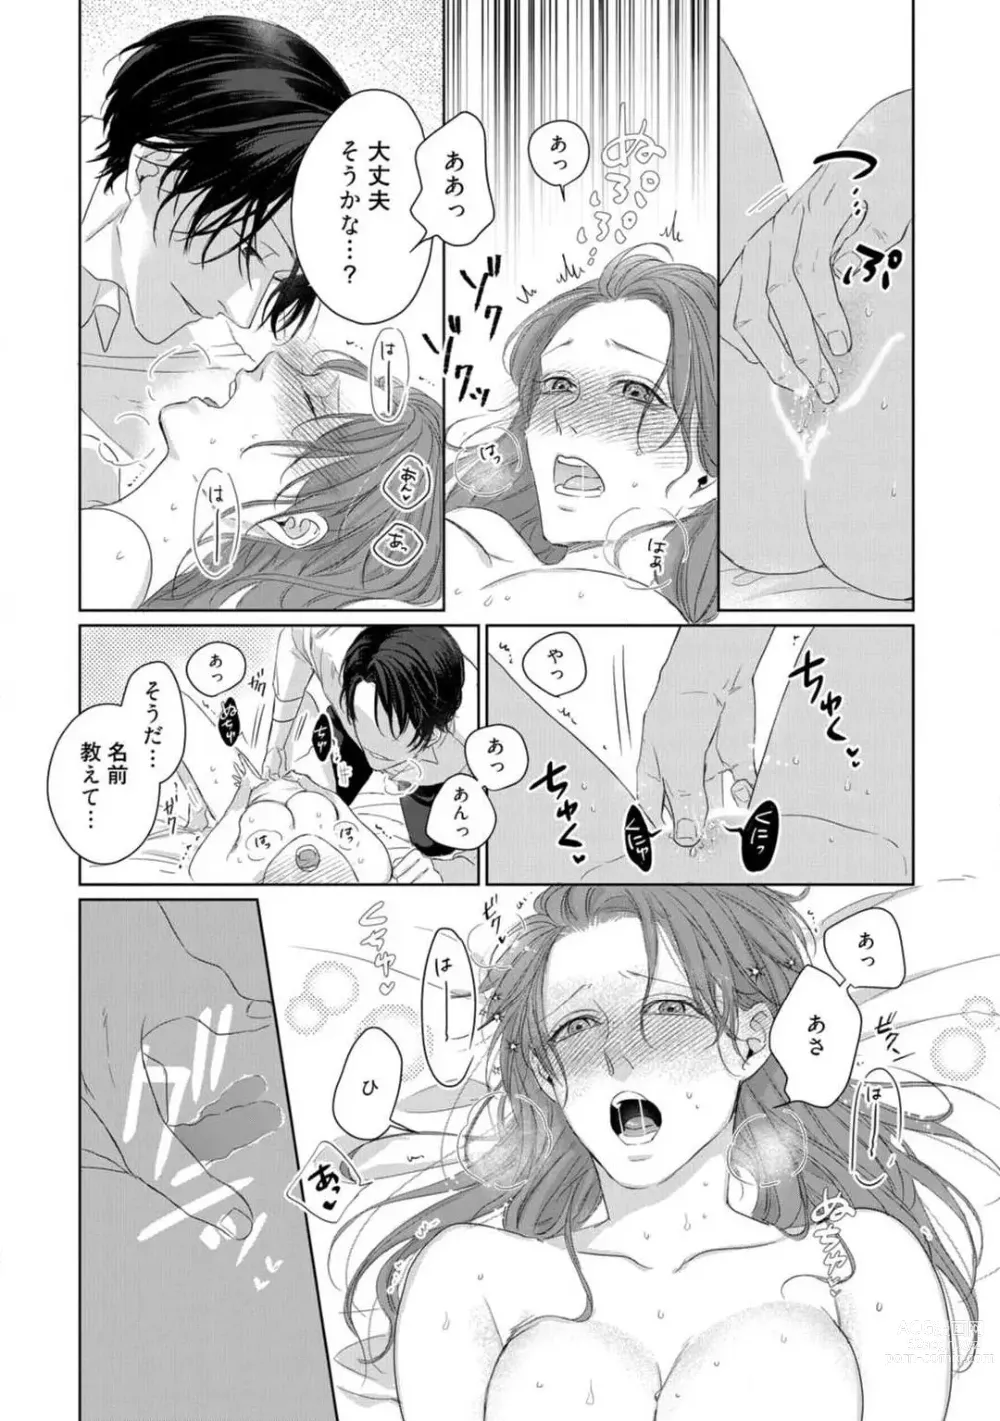 Page 31 of manga Anata no Koisuru Kiraina Watashi~Chp.1-4